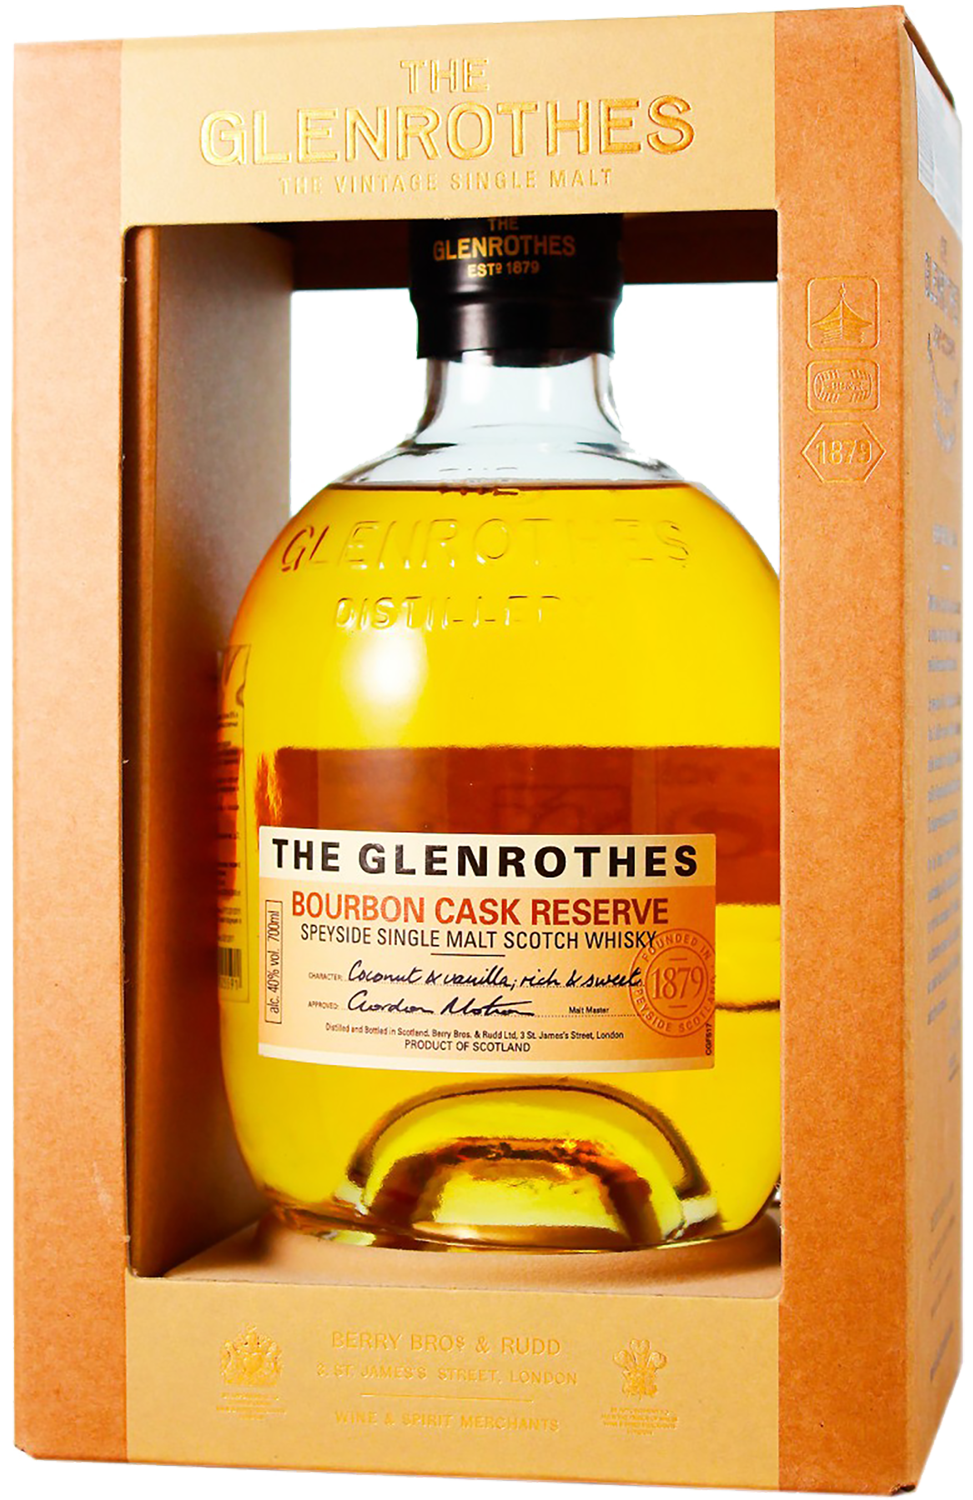 The Glenrothes Bourbon Cask Reserve Speyside Single Malt Scotch Whisky (gift box) koval single barrel bourbon whisky